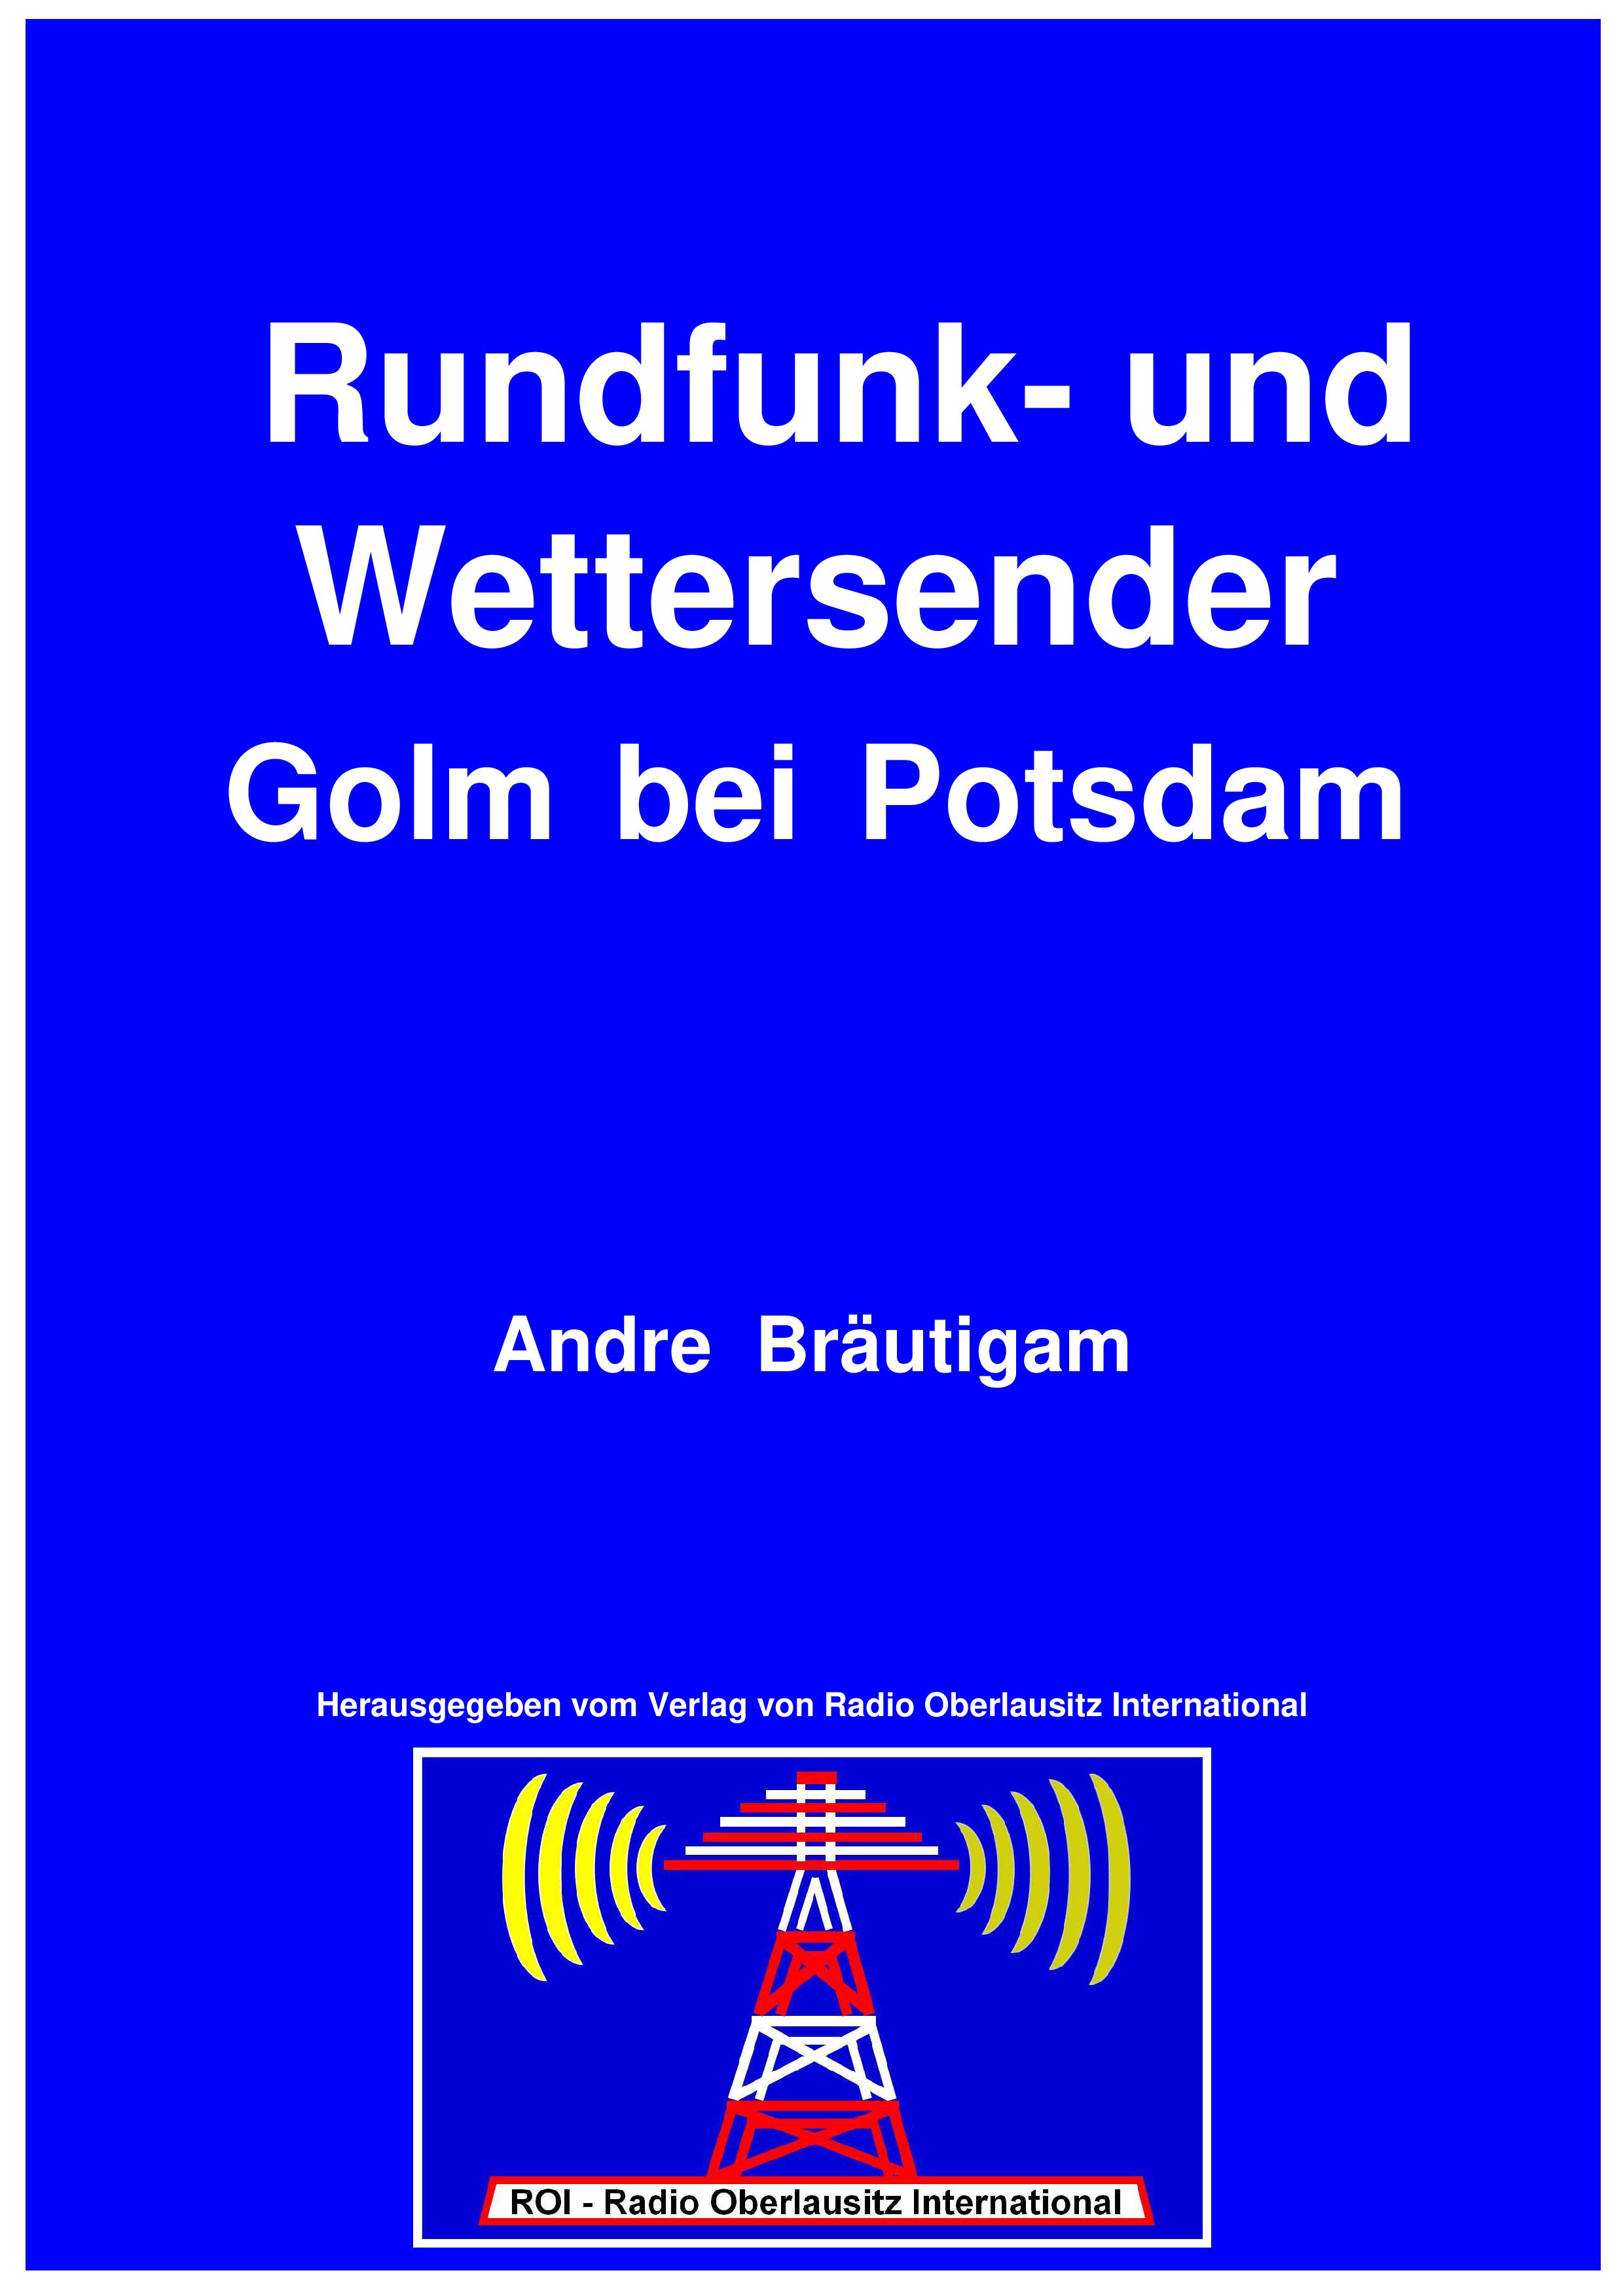 Rundfunksender Golm bei Potsdam